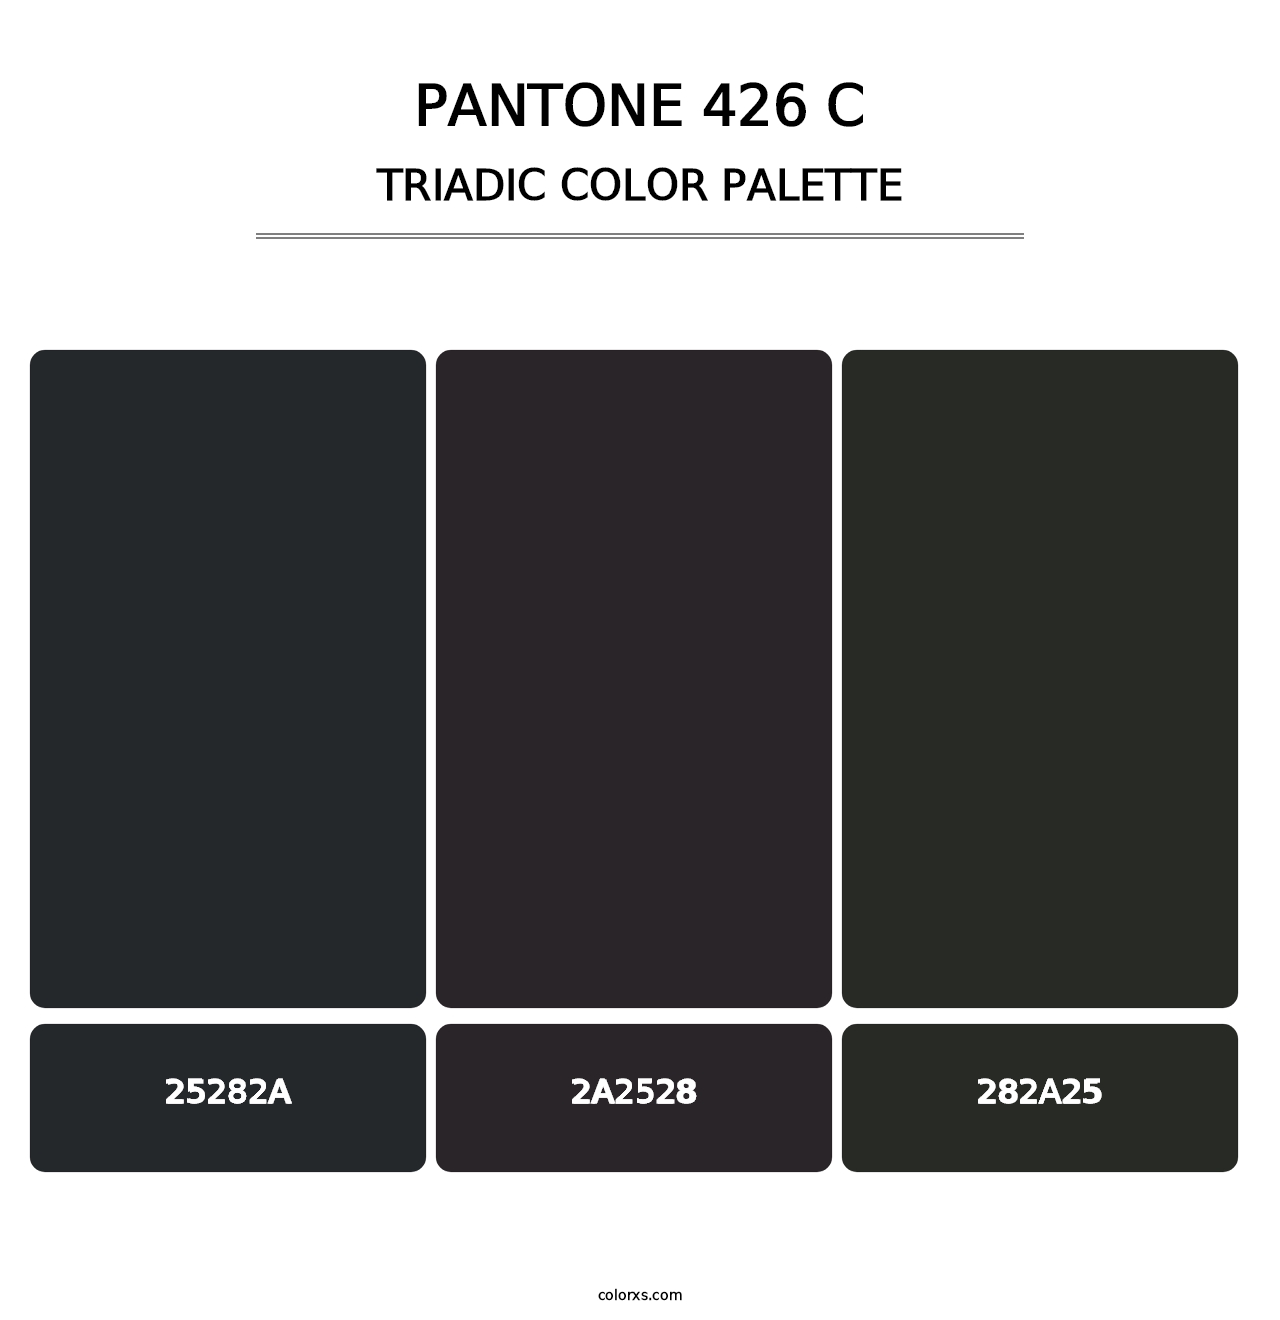 PANTONE 426 C - Triadic Color Palette